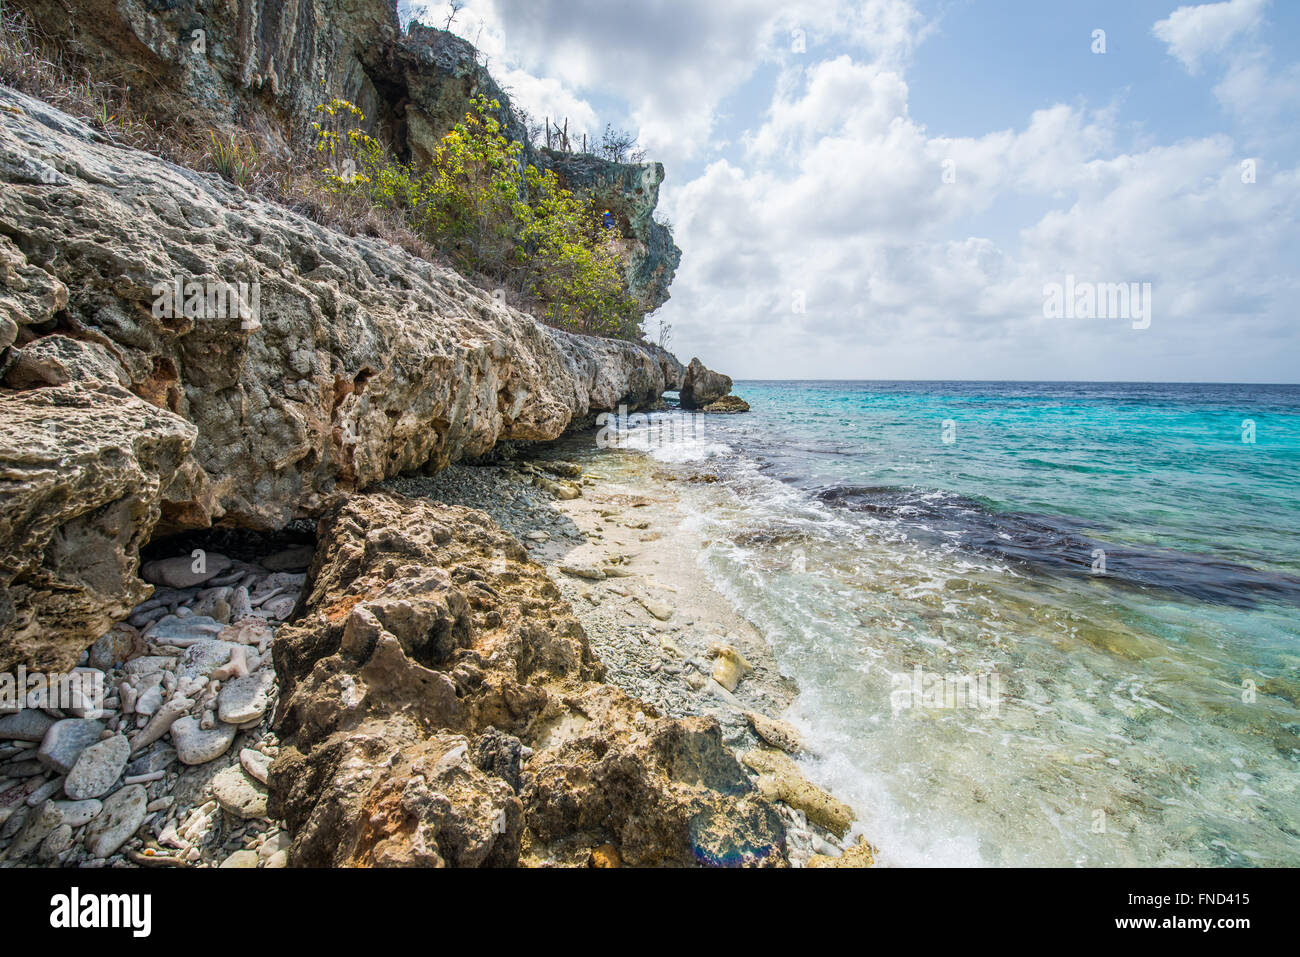 Hermosas aguas azul celeste del mar alrededor de Bonaire Foto de stock